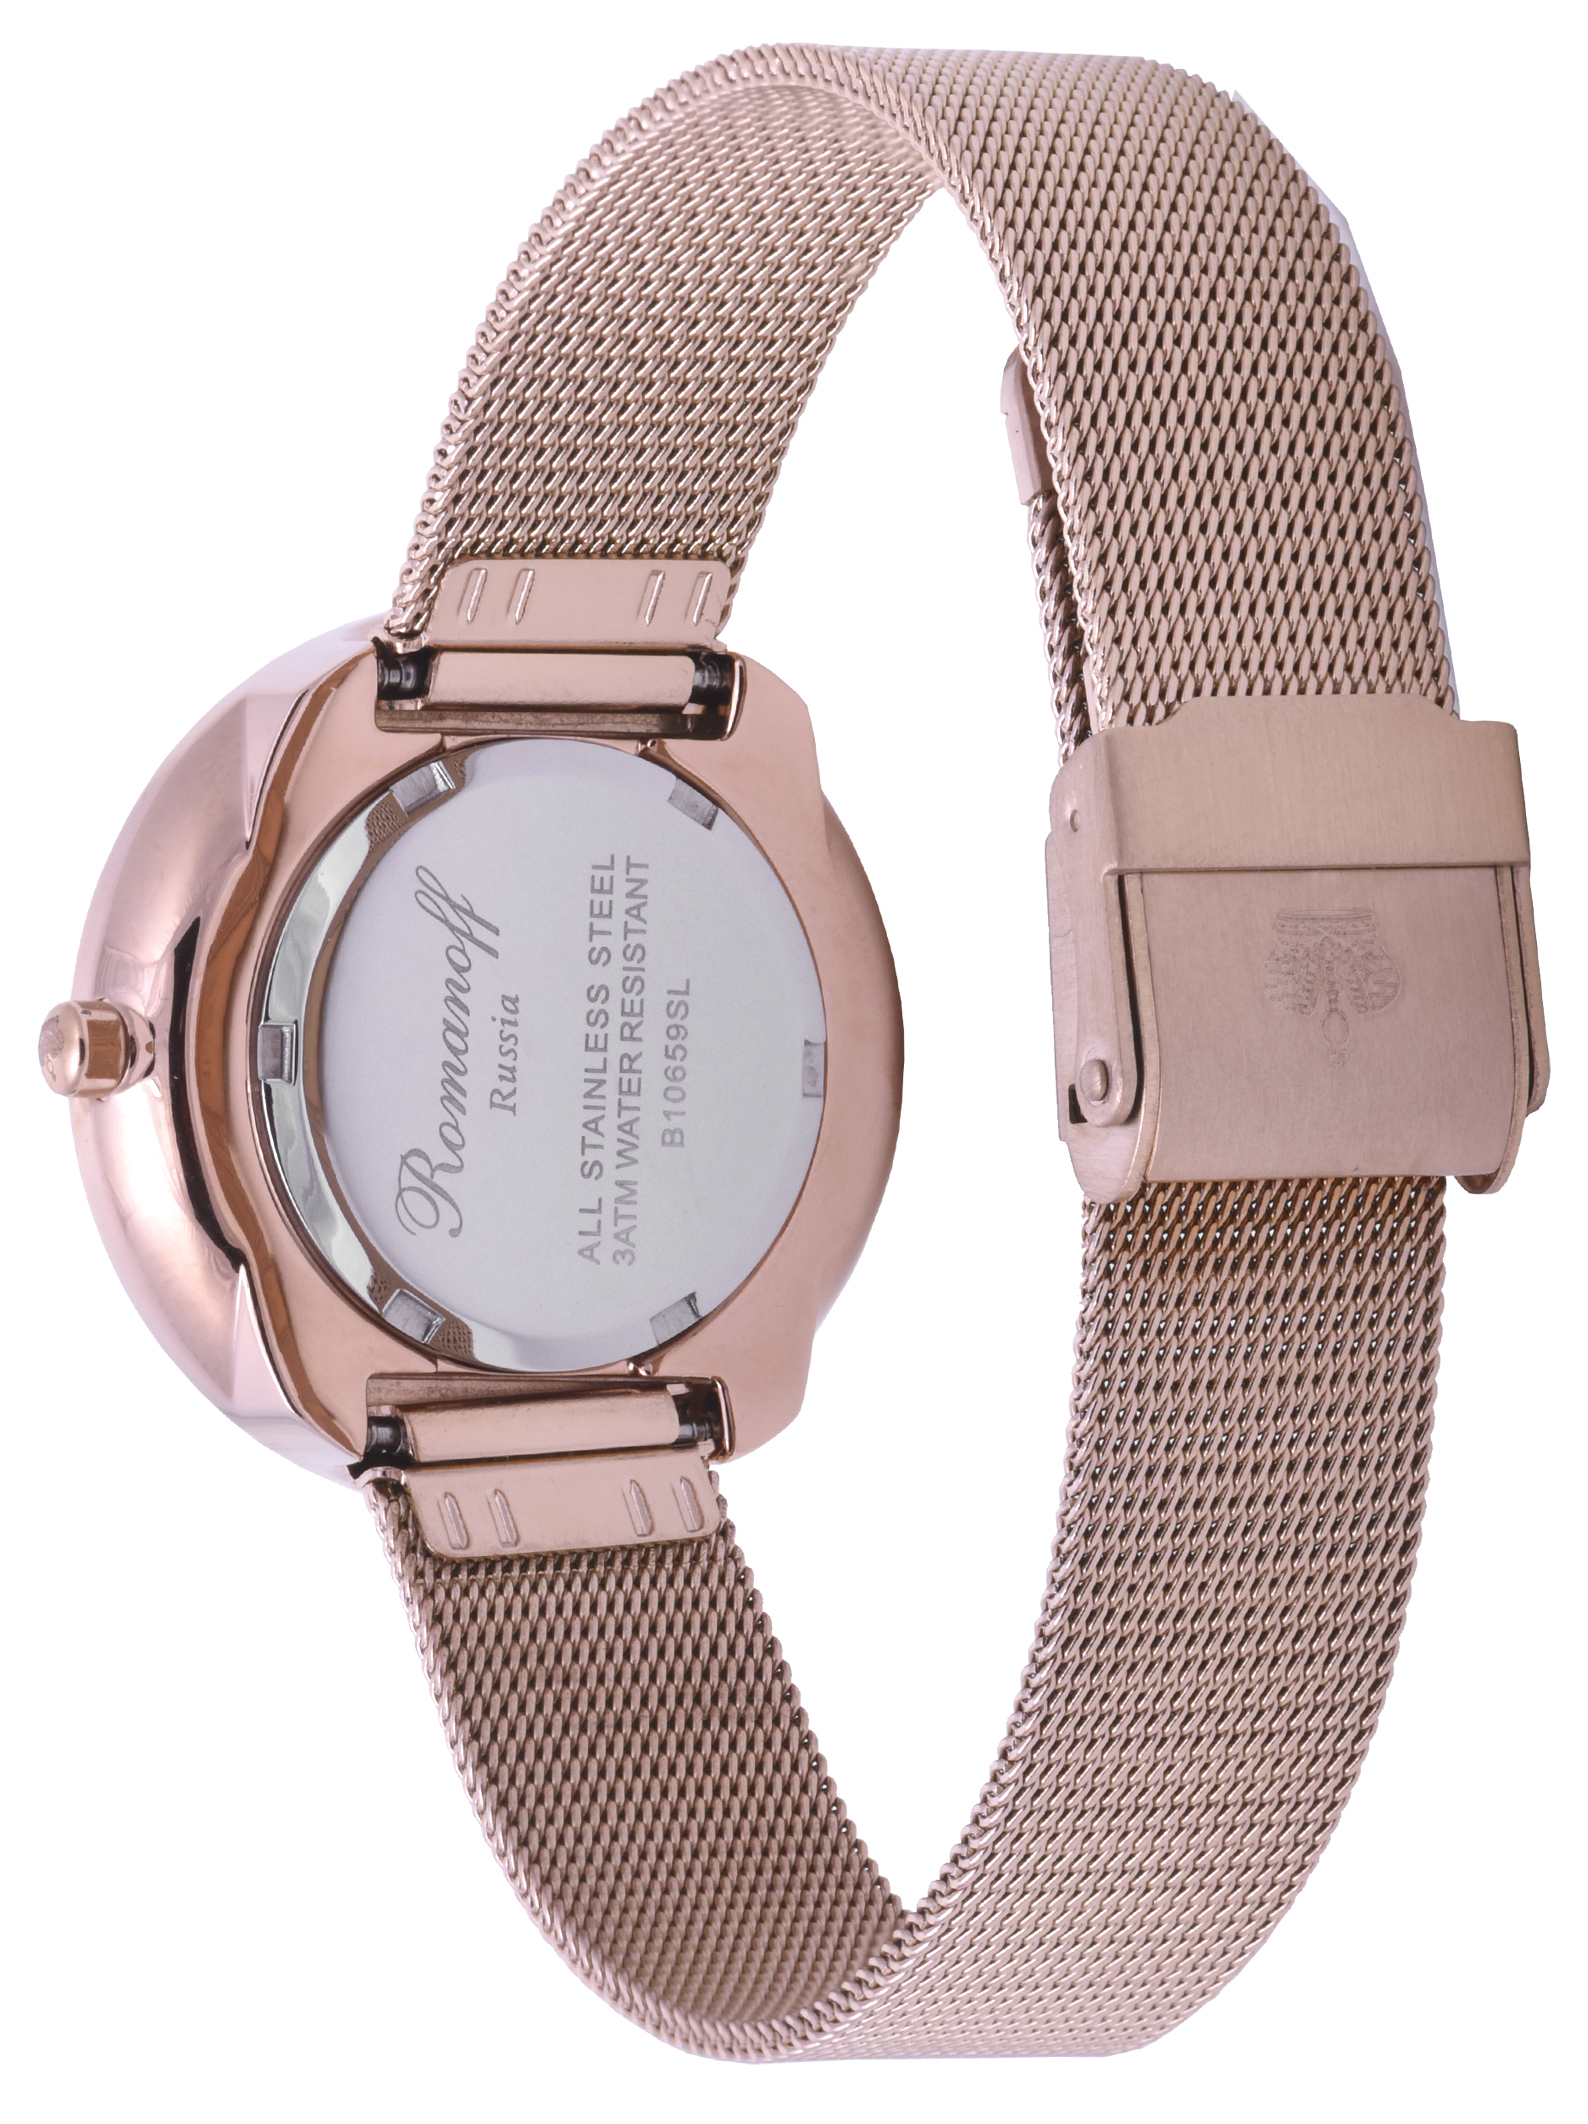 Фото часов Часы для пары Romanoff модель 10659B1 и браслет